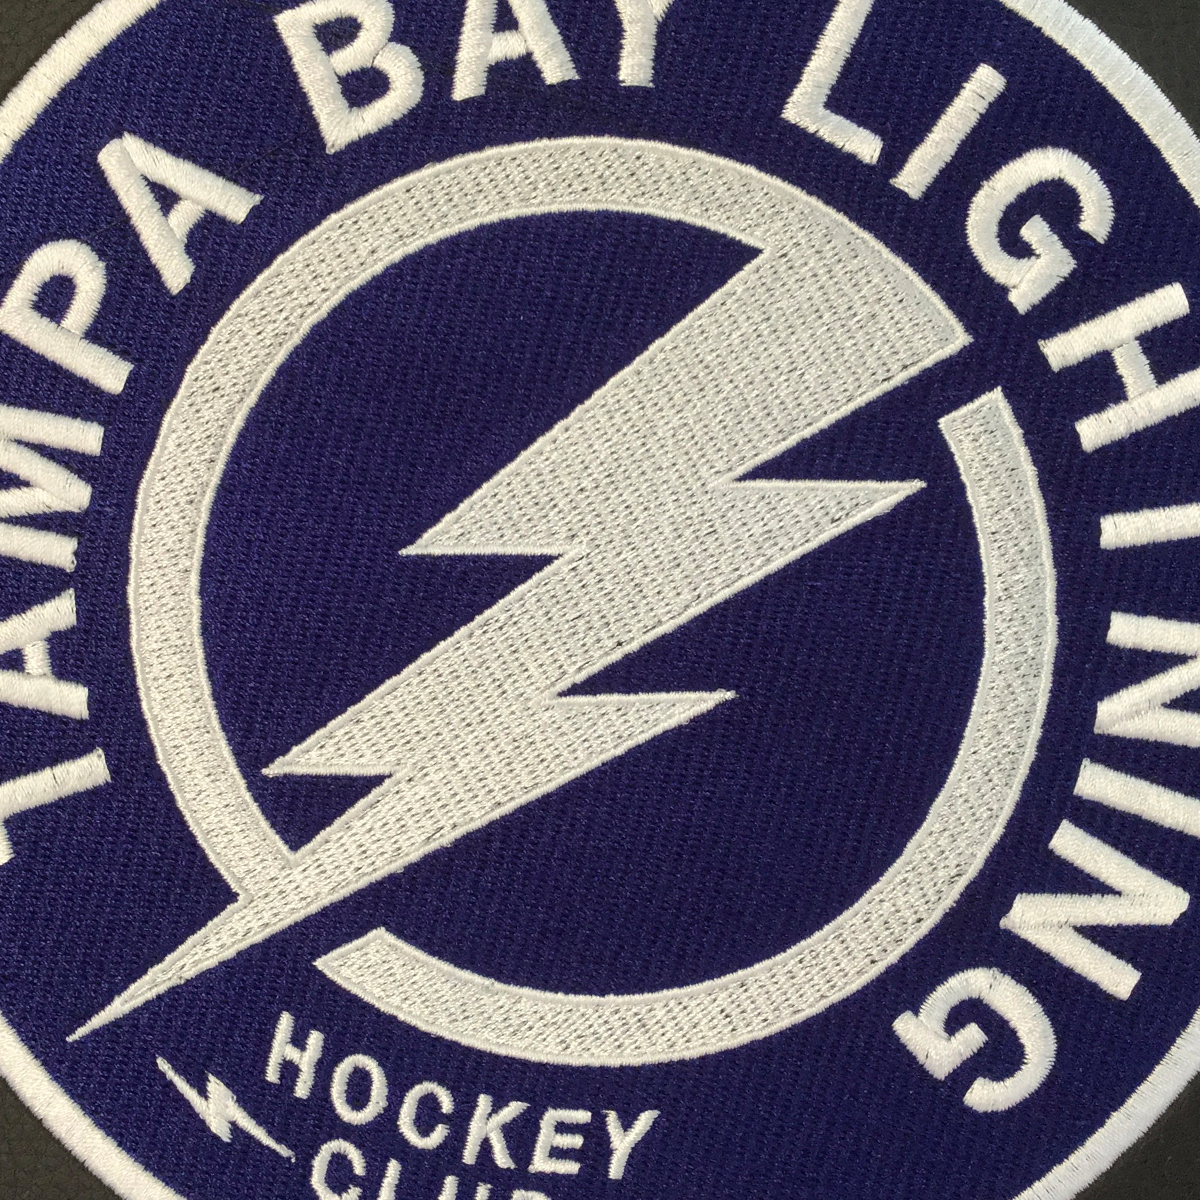 Tampa Bay Lightning Alternate Logo Panel